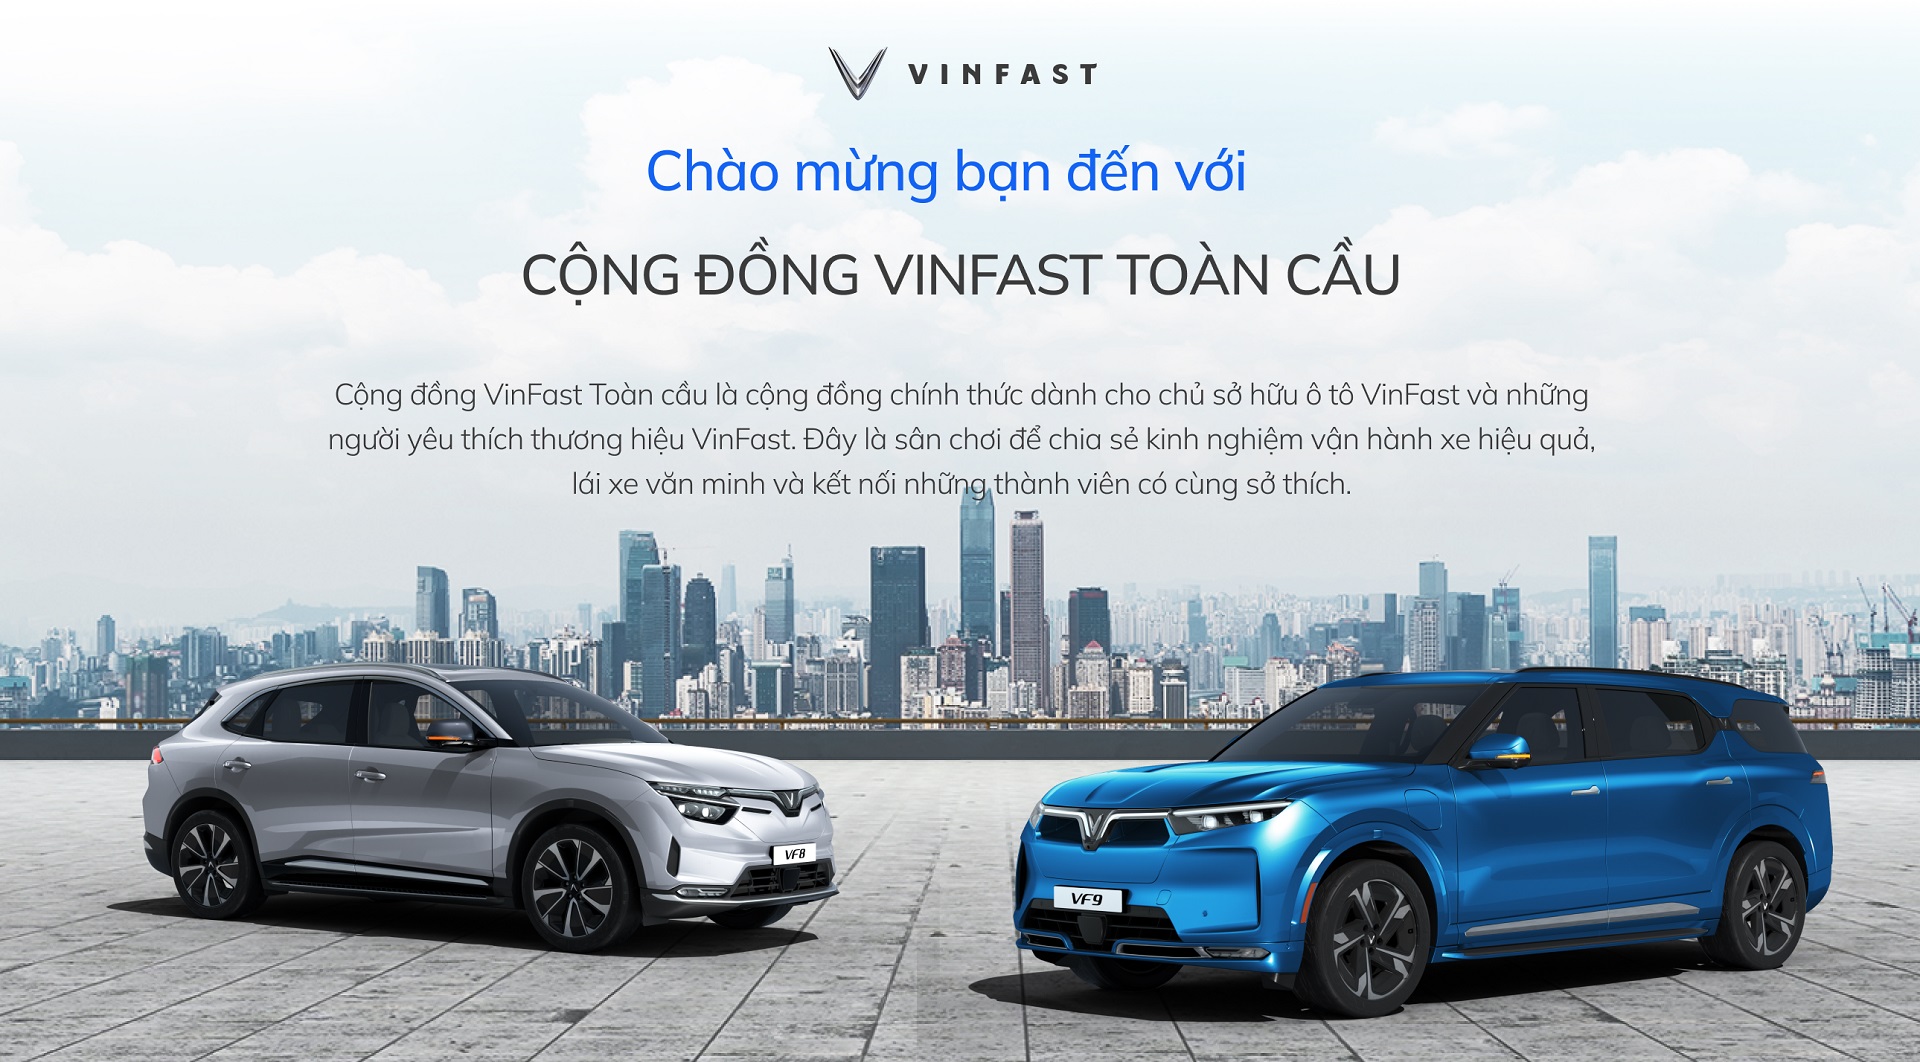 Kinh tế - VinFast ra mắt cộng đồng VinFast toàn cầu